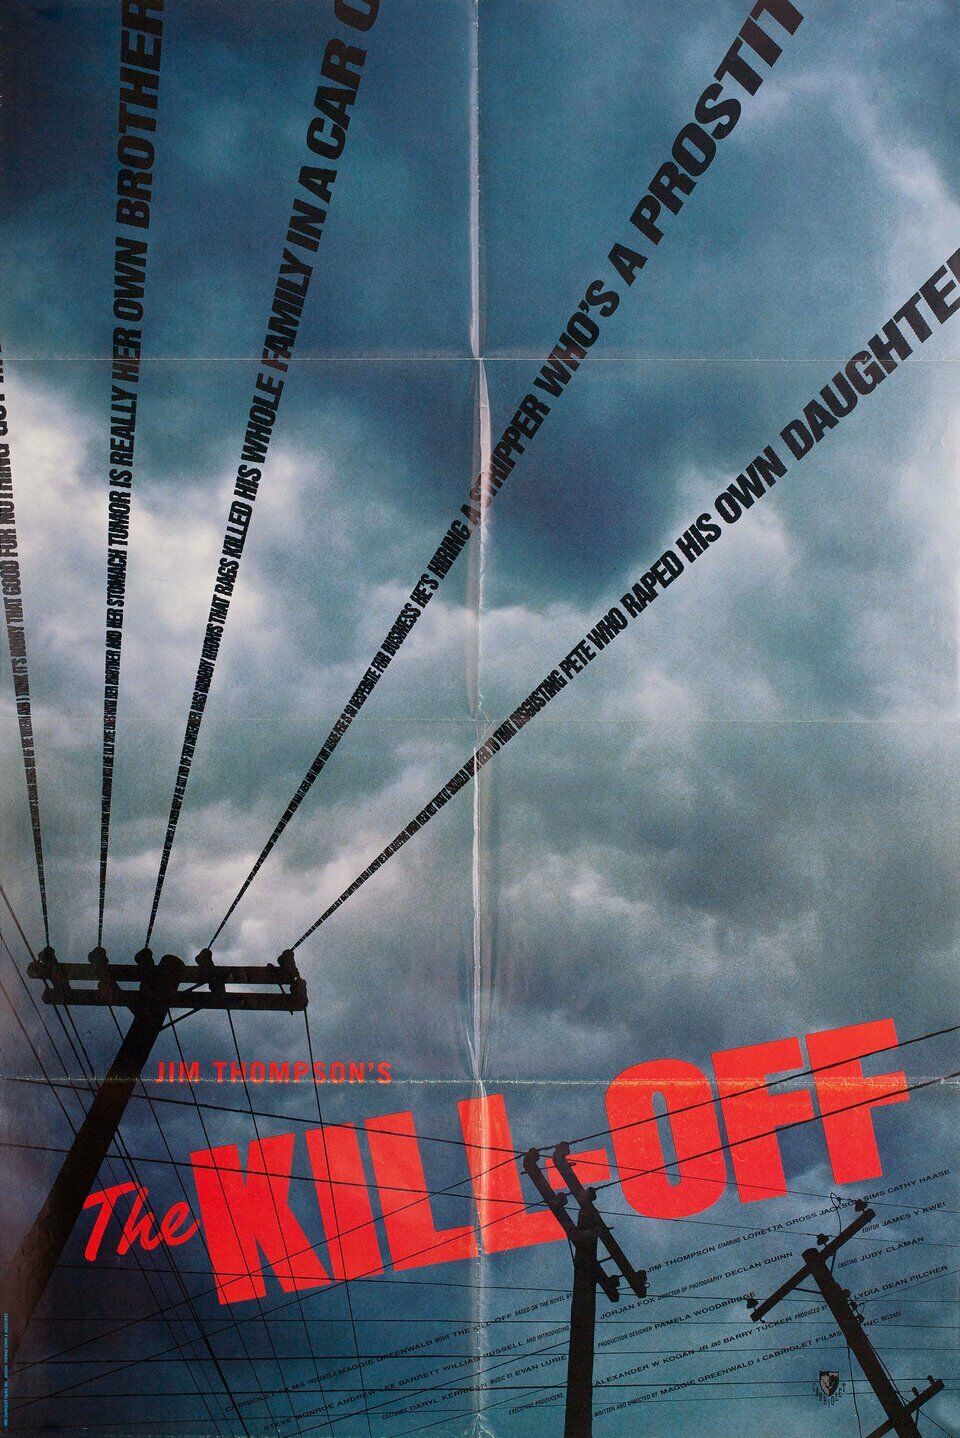 The Kill-Off (1989) Screenshot 2